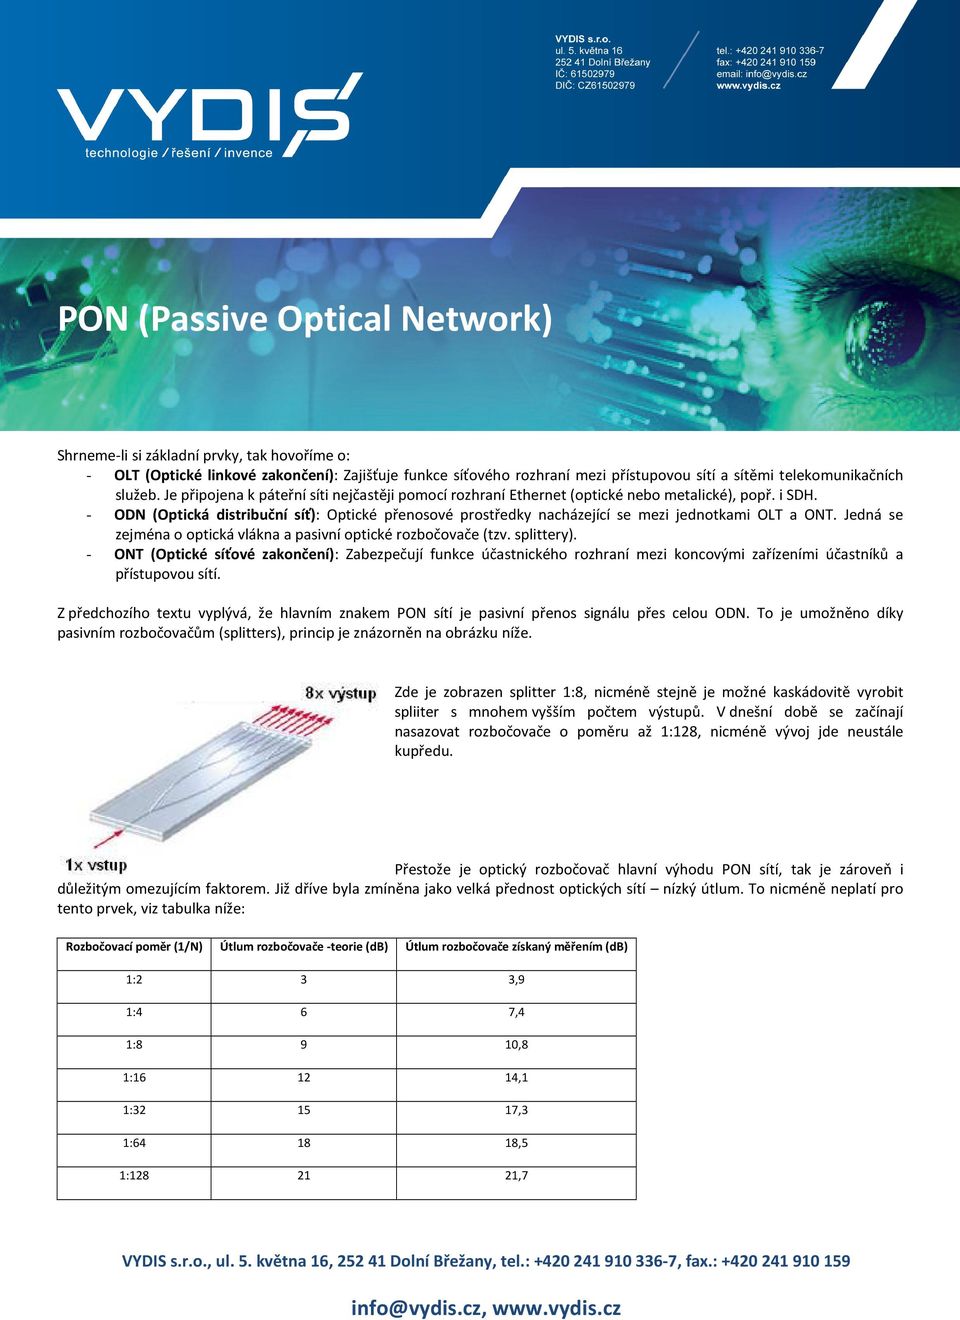 - ODN (Optická distribuční síť): Optické přenosové prostředky nacházející se mezi jednotkami OLT a ONT. Jedná se zejména o optická vlákna a pasivní optické rozbočovače (tzv. splittery).